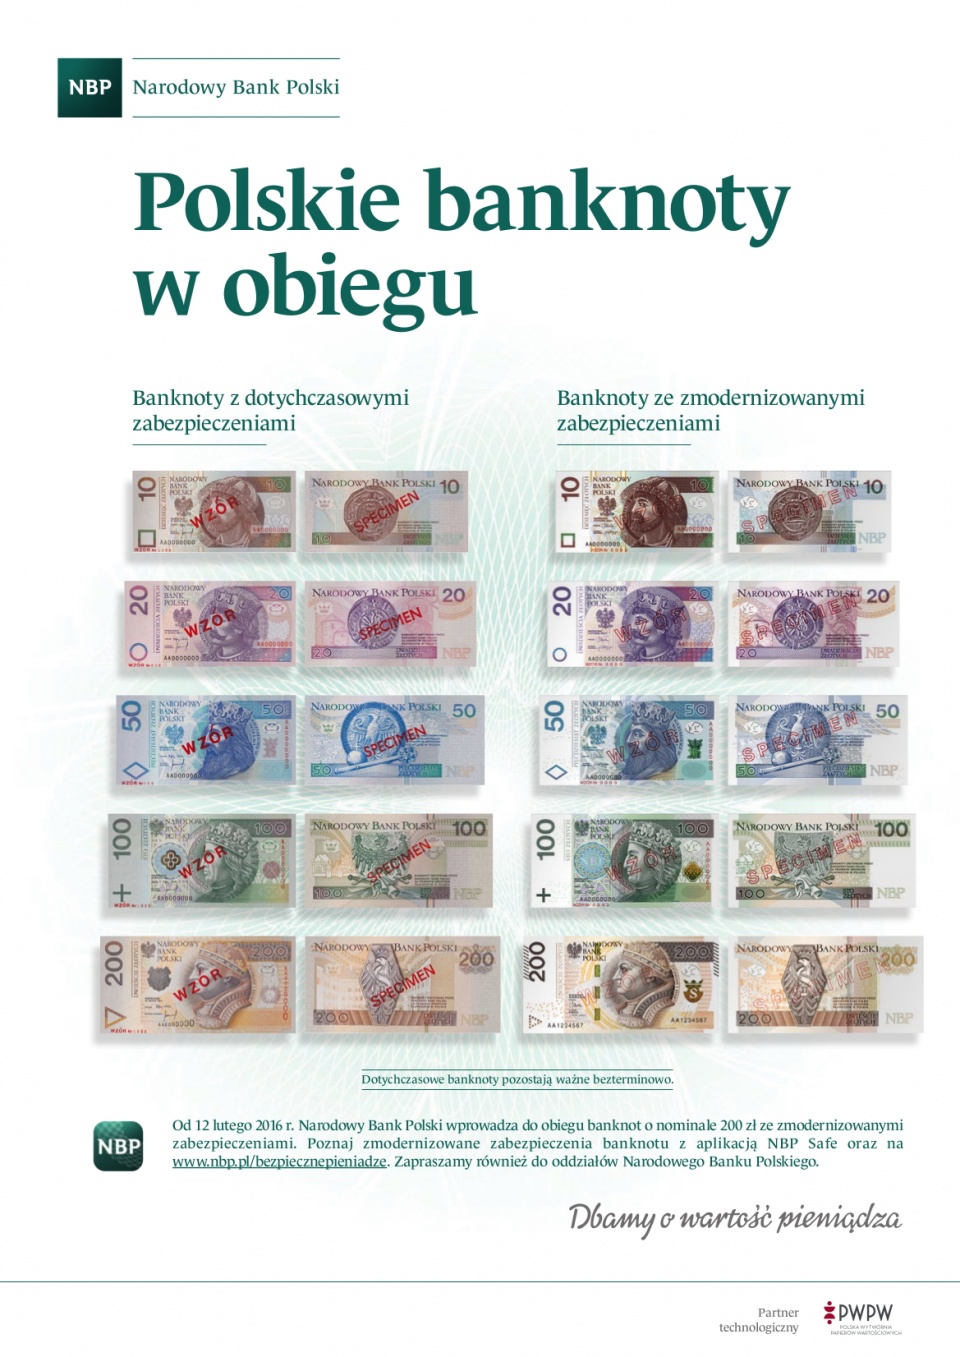 Polskie Banknoty w obiegu. Źródło: www.nbp.pl